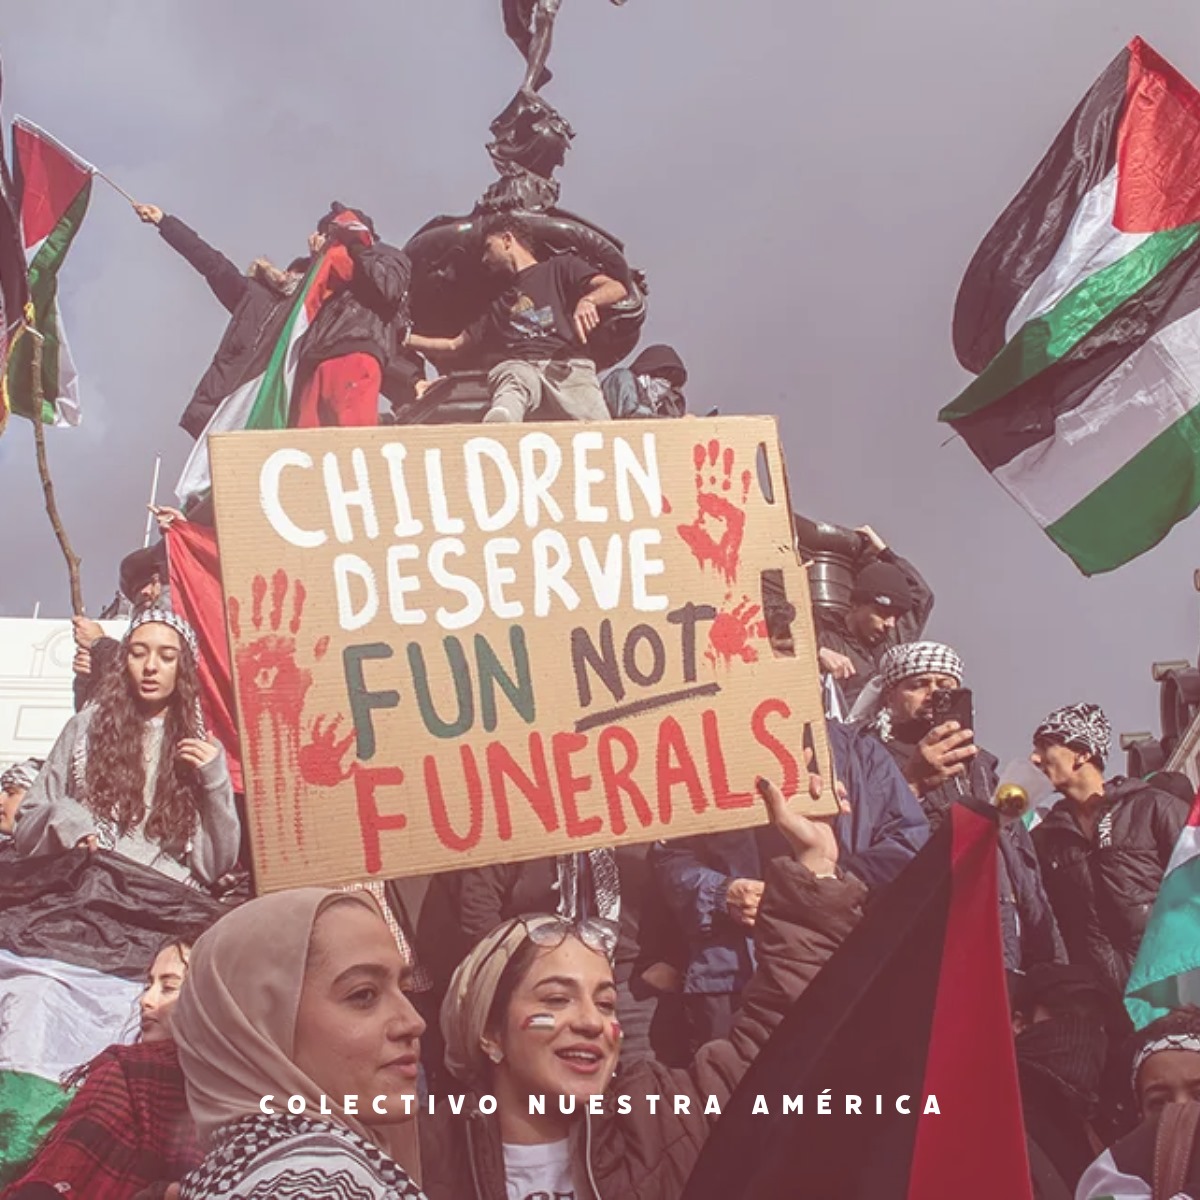 Este #DiaDelNiño hay que recordar también a las infancias que sobreviven al genocidio en #Palestina